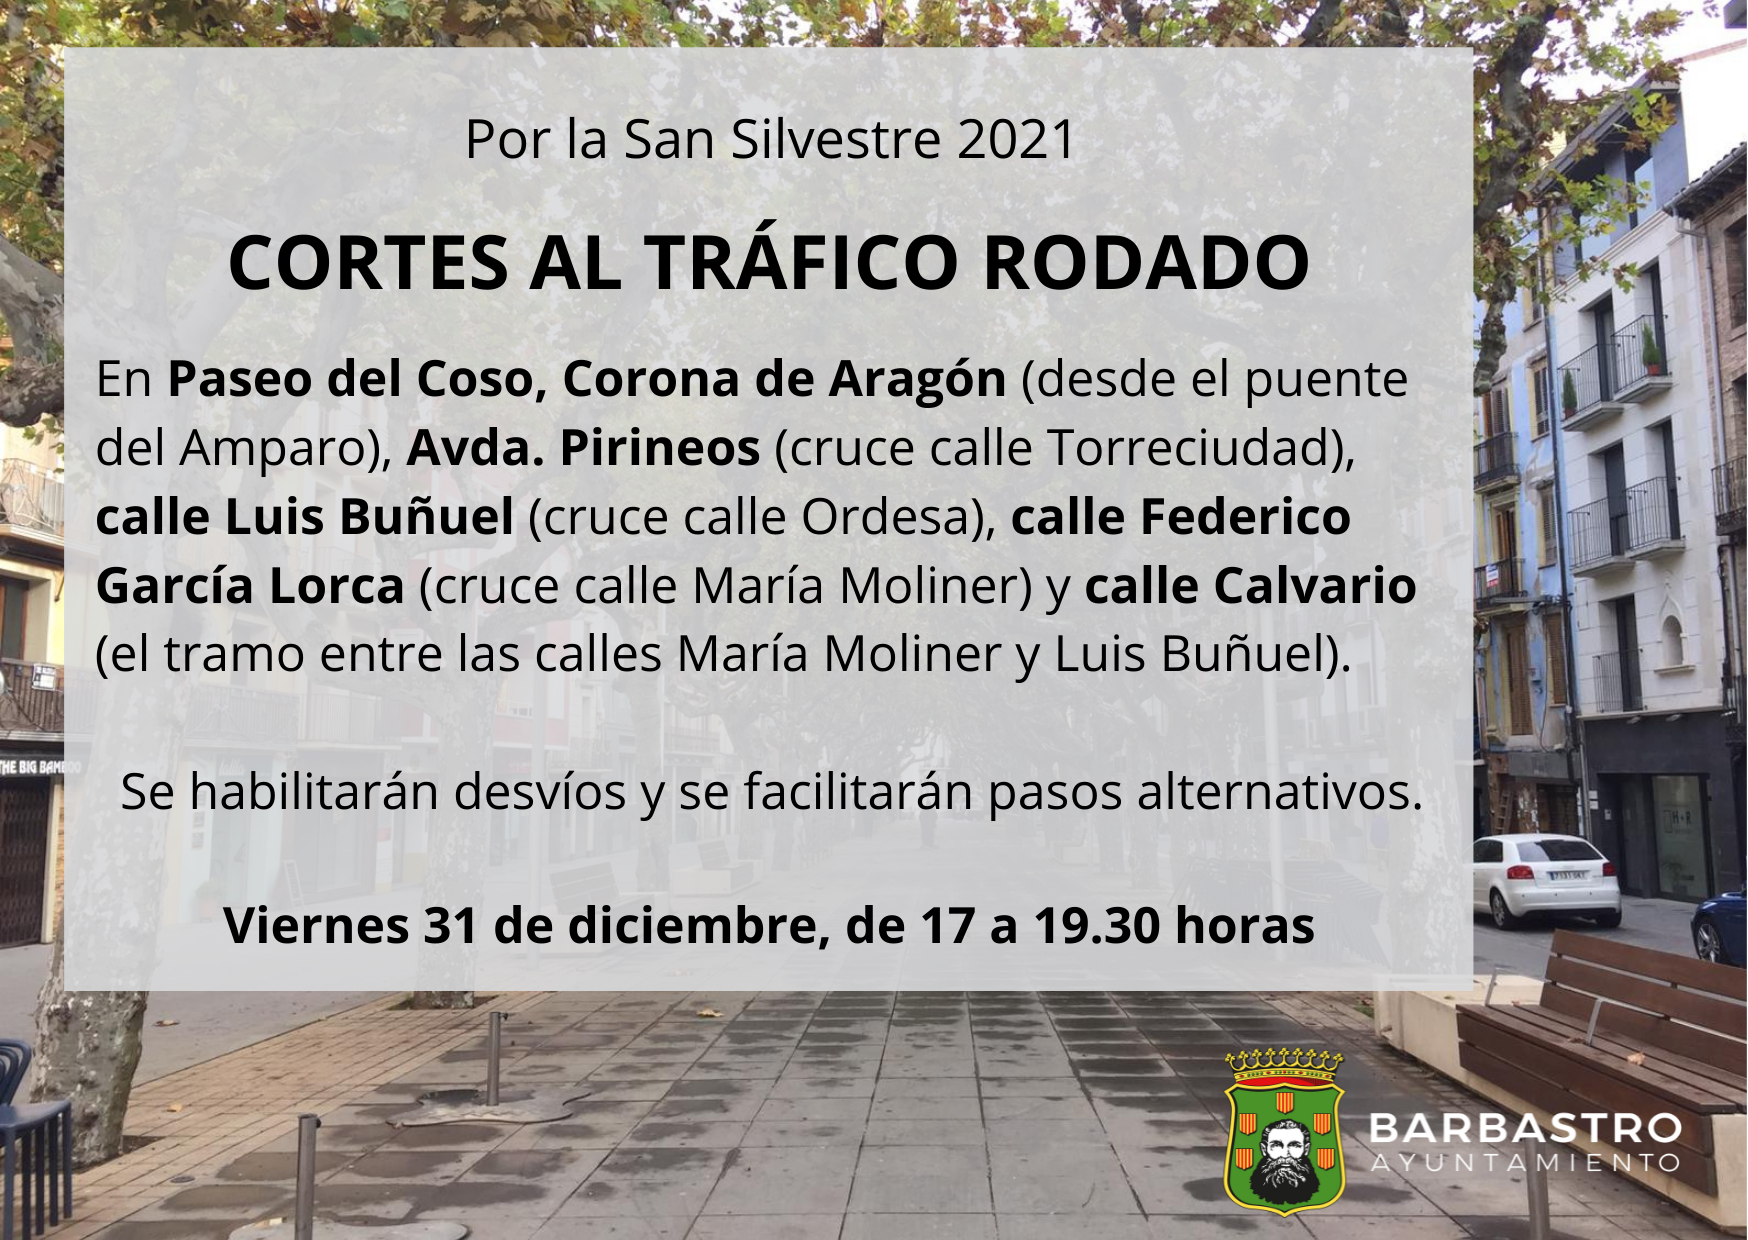 Restricciones al tráfico con motivo de la Carrera San Silvestre 2021